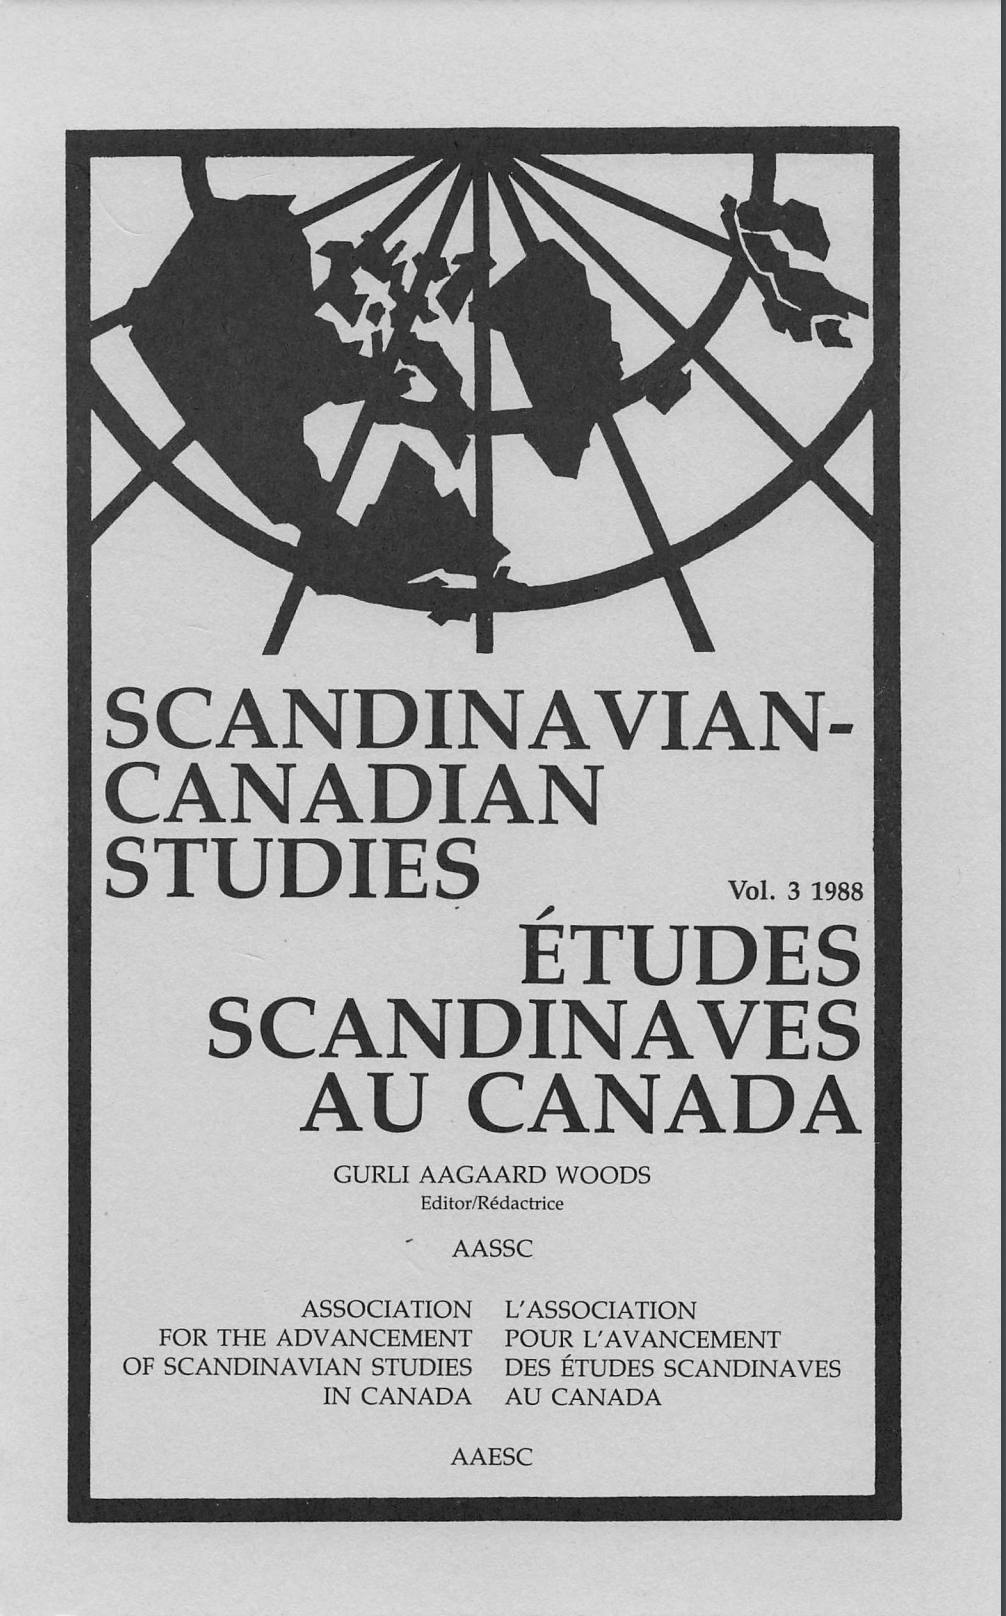 					View Vol. 3 (1988): SCANDINAVIAN-CANADIAN STUDIES/ÉTUDES SCANDINAVES AU CANADA Vol. 3 (1988)
				